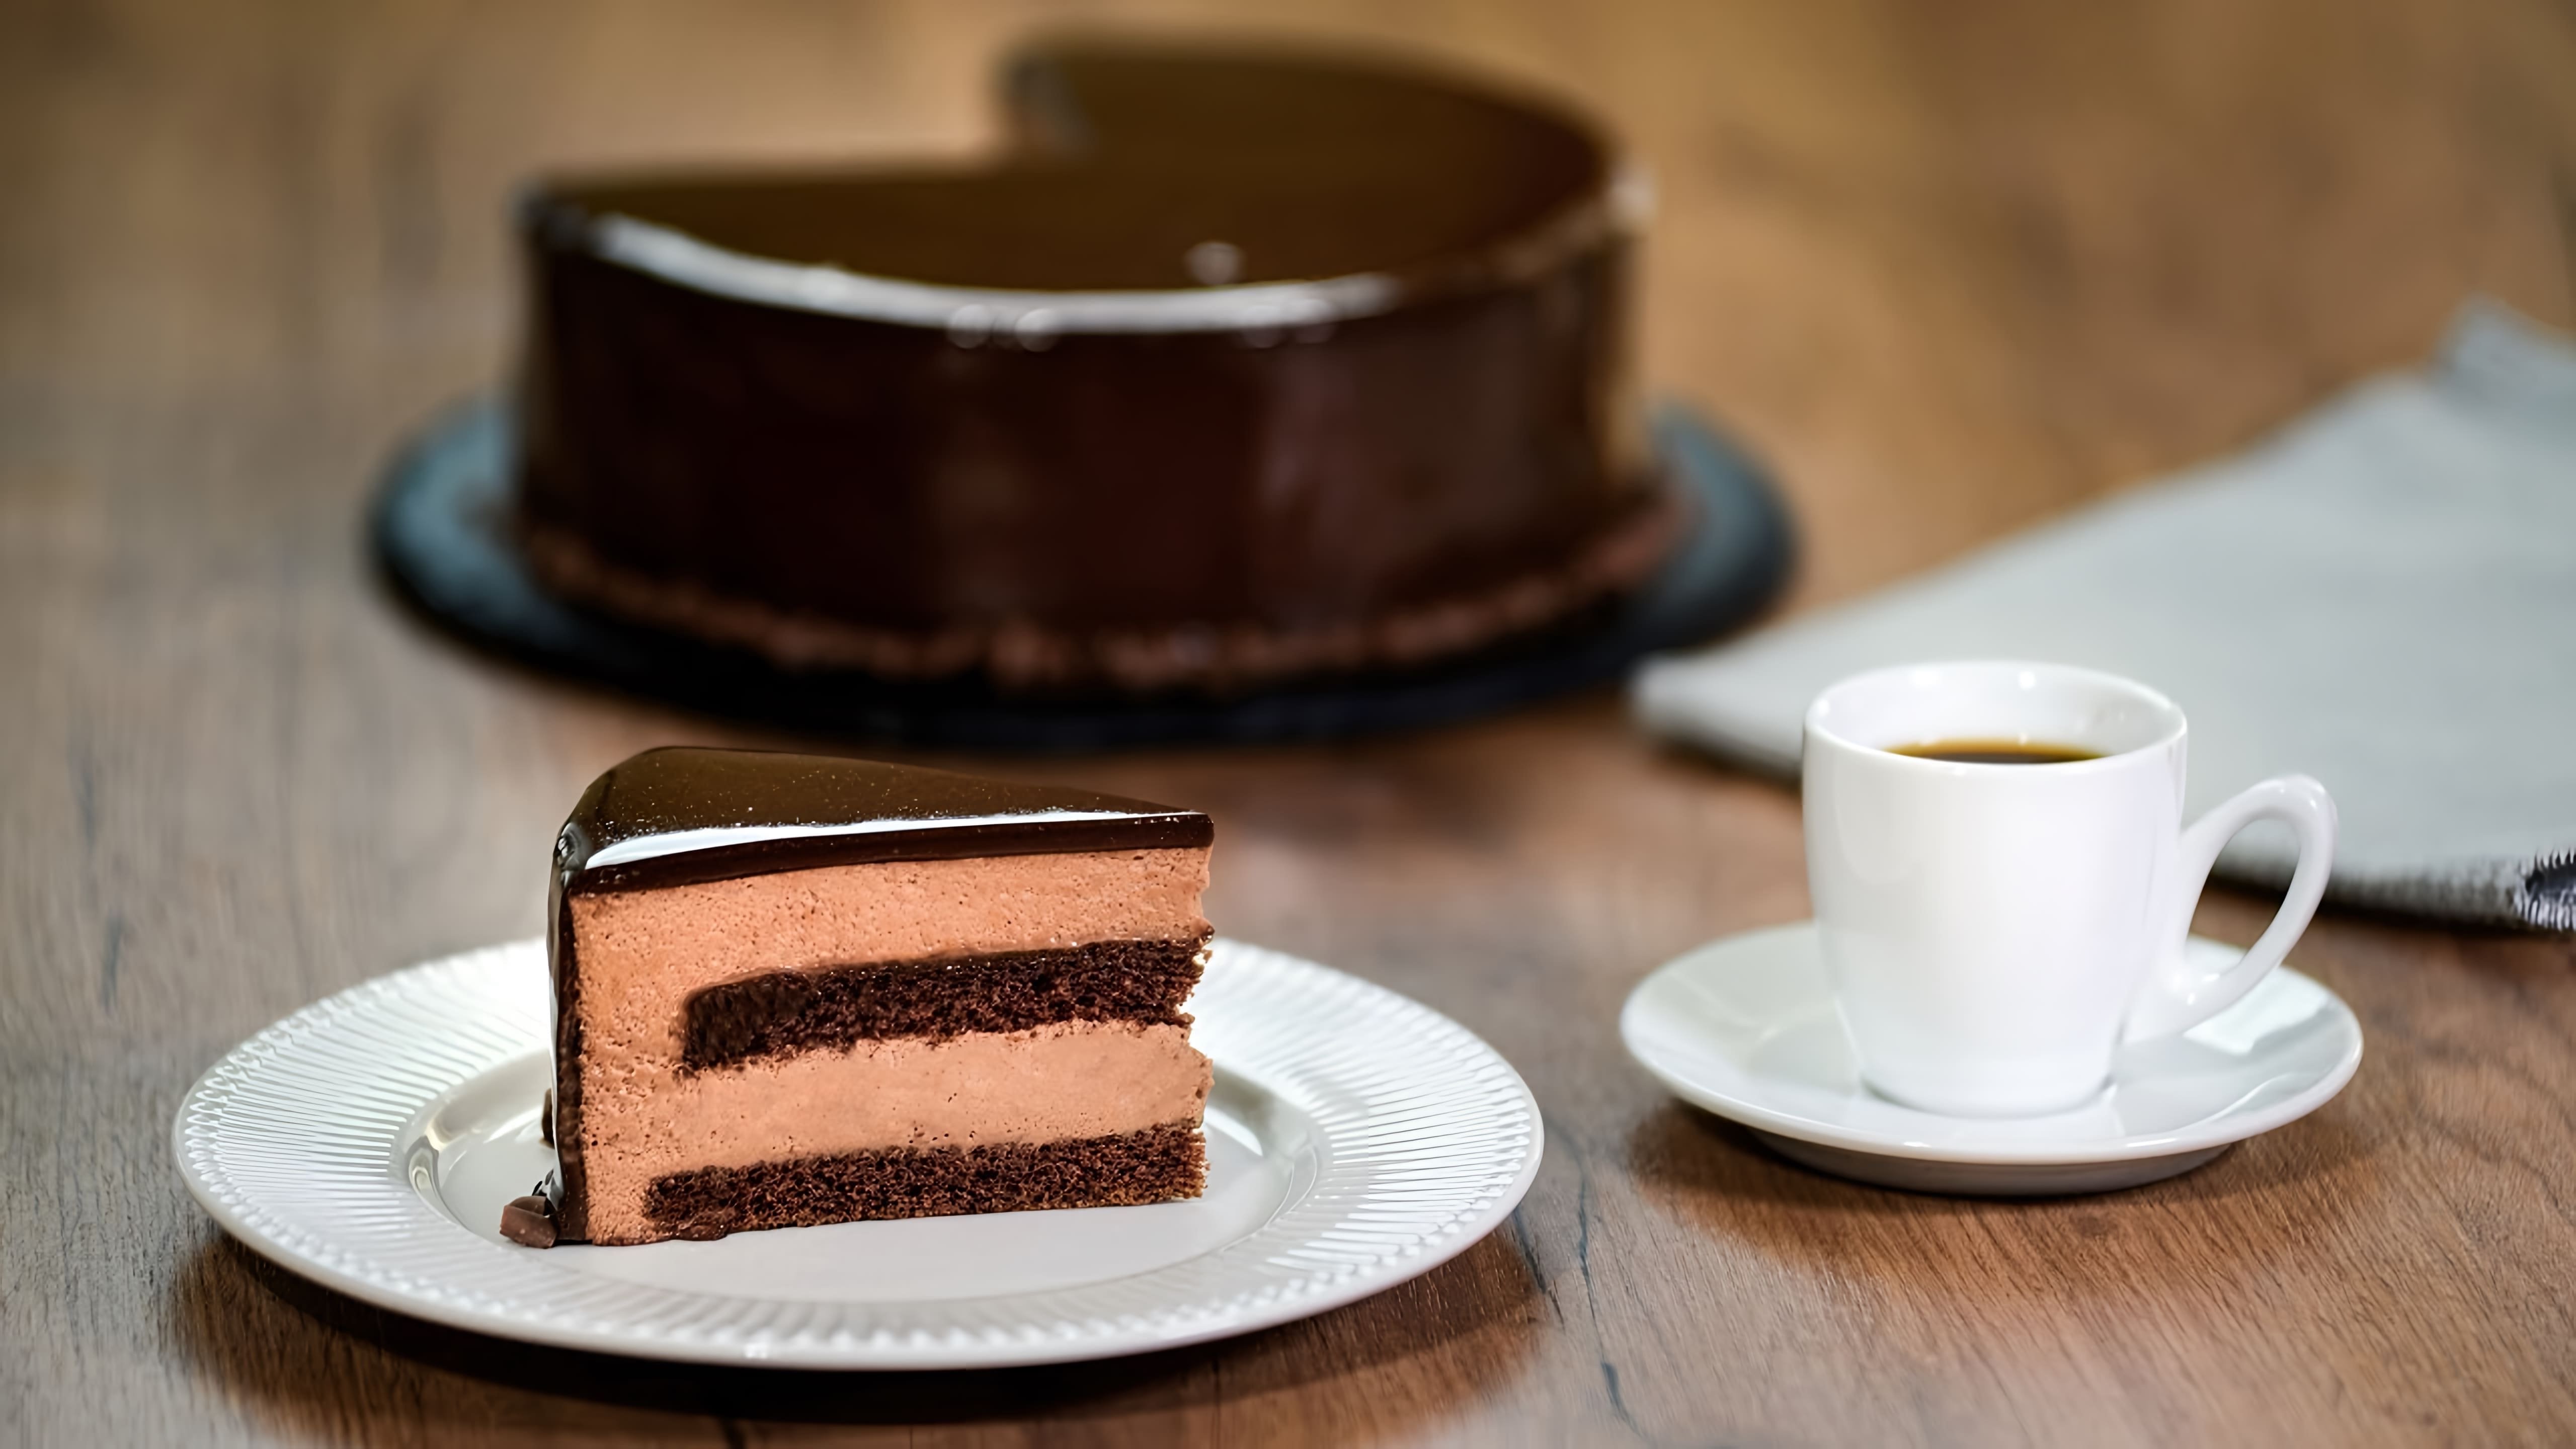 Шоколадный муссовый торт с зеркальной глазурью - это десерт, который выглядит очень аппетитно и привлекательно